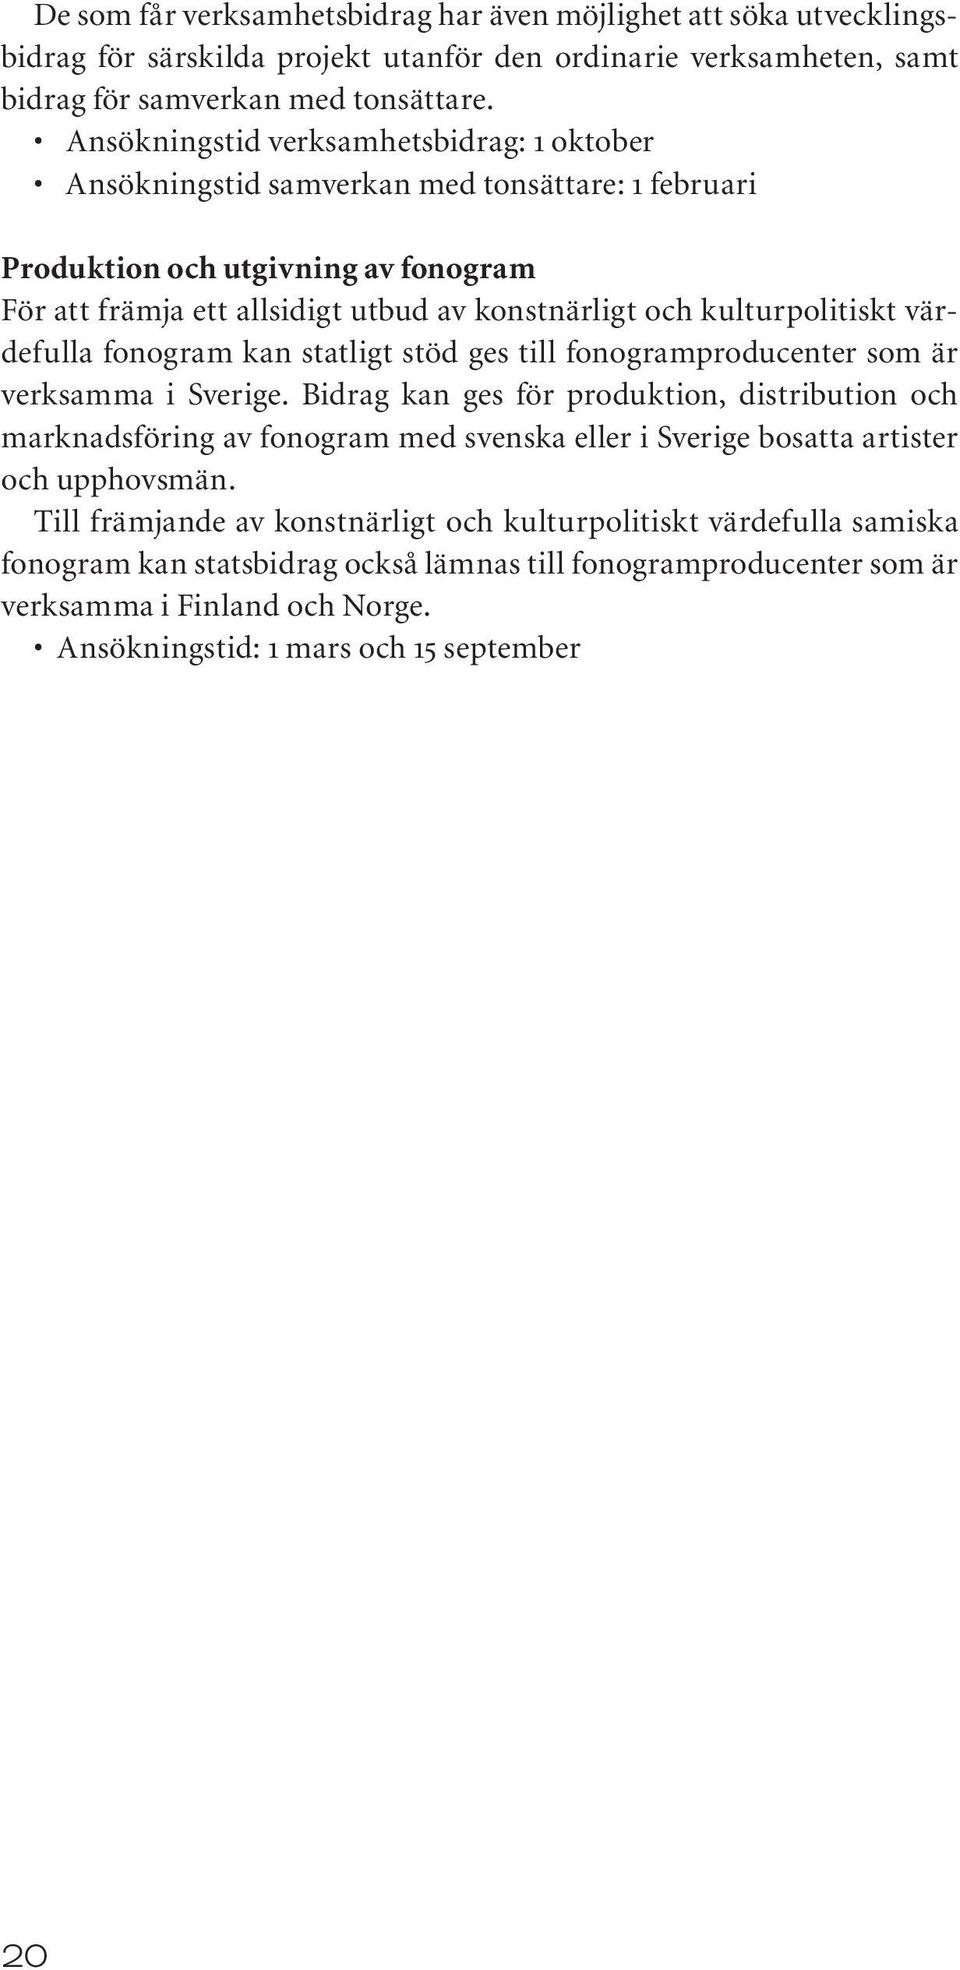 kulturpolitiskt värdefulla fonogram kan statligt stöd ges till fonogramproducenter som är verksamma i Sverige.